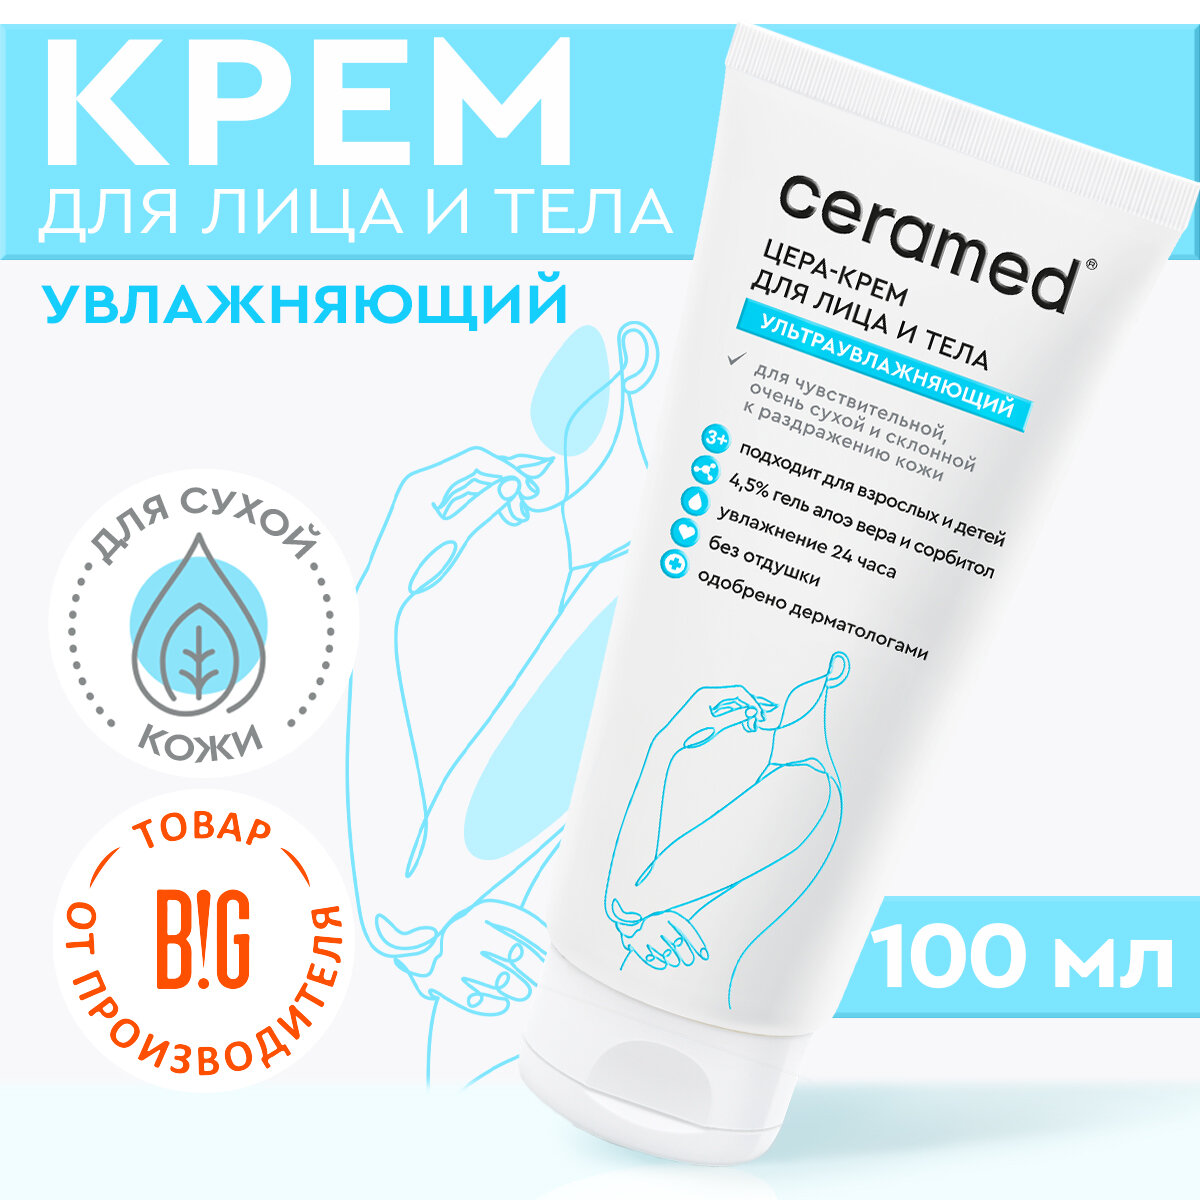 Ceramed Цера-крем для лица и тела ультраувлажняющий,100 мл с церамидами